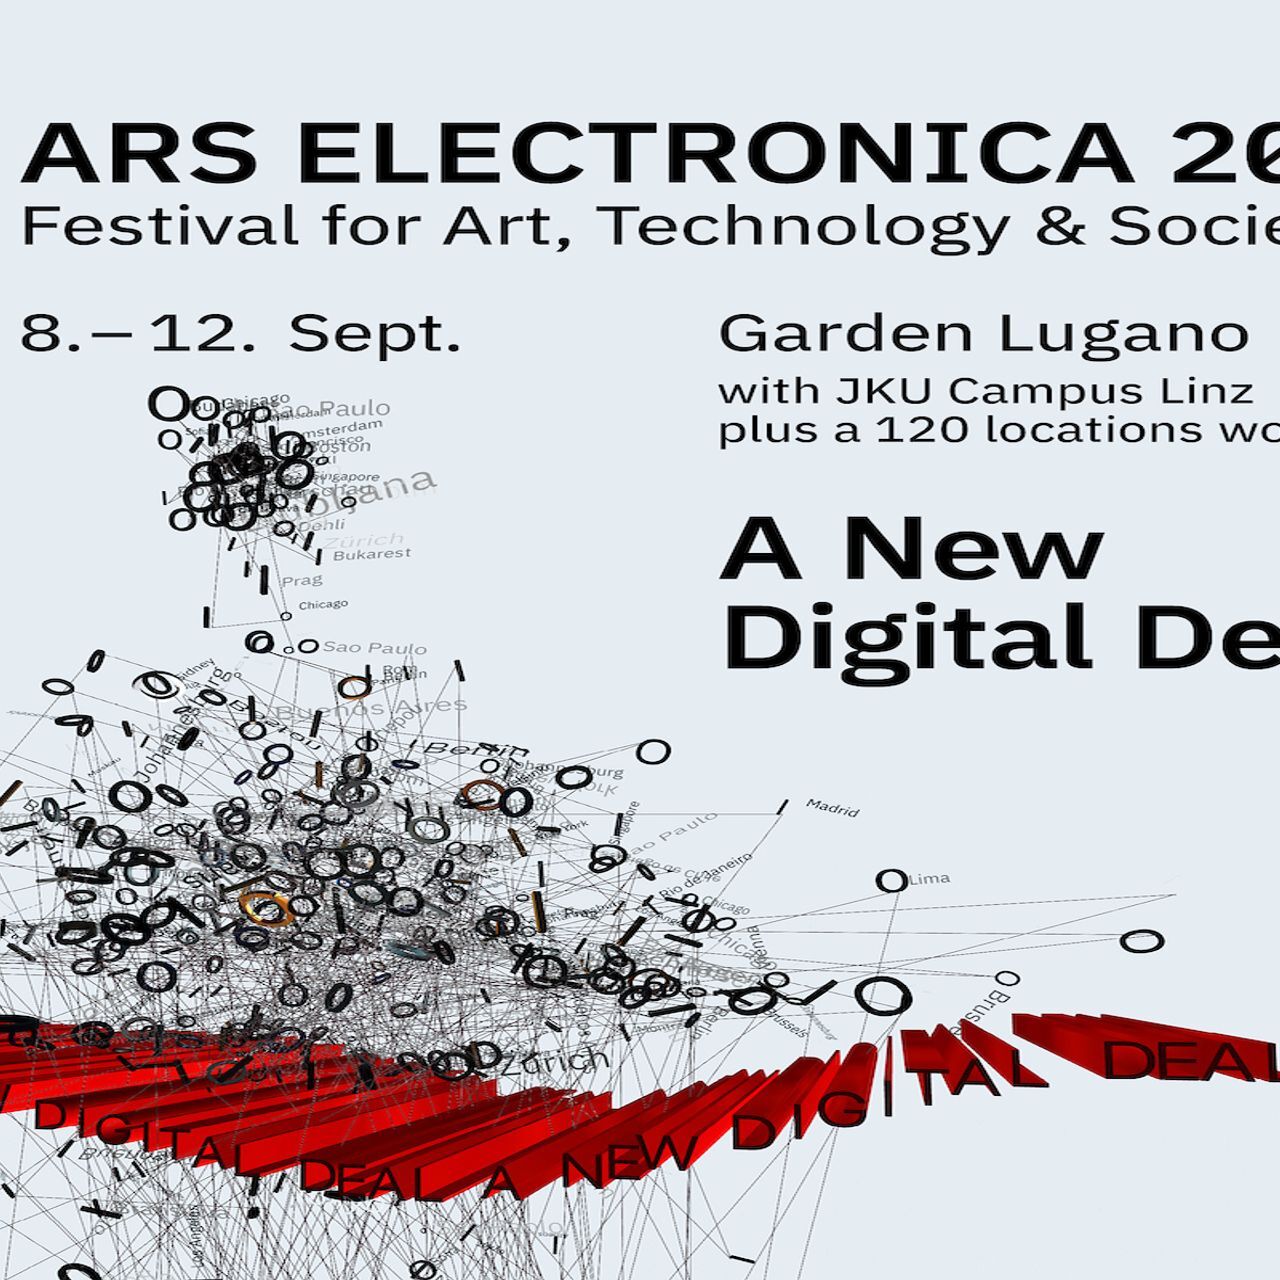 Афиша фестиваля Ars Electronica на его дебюте в Лугано 9-12 сентября 2021 г.